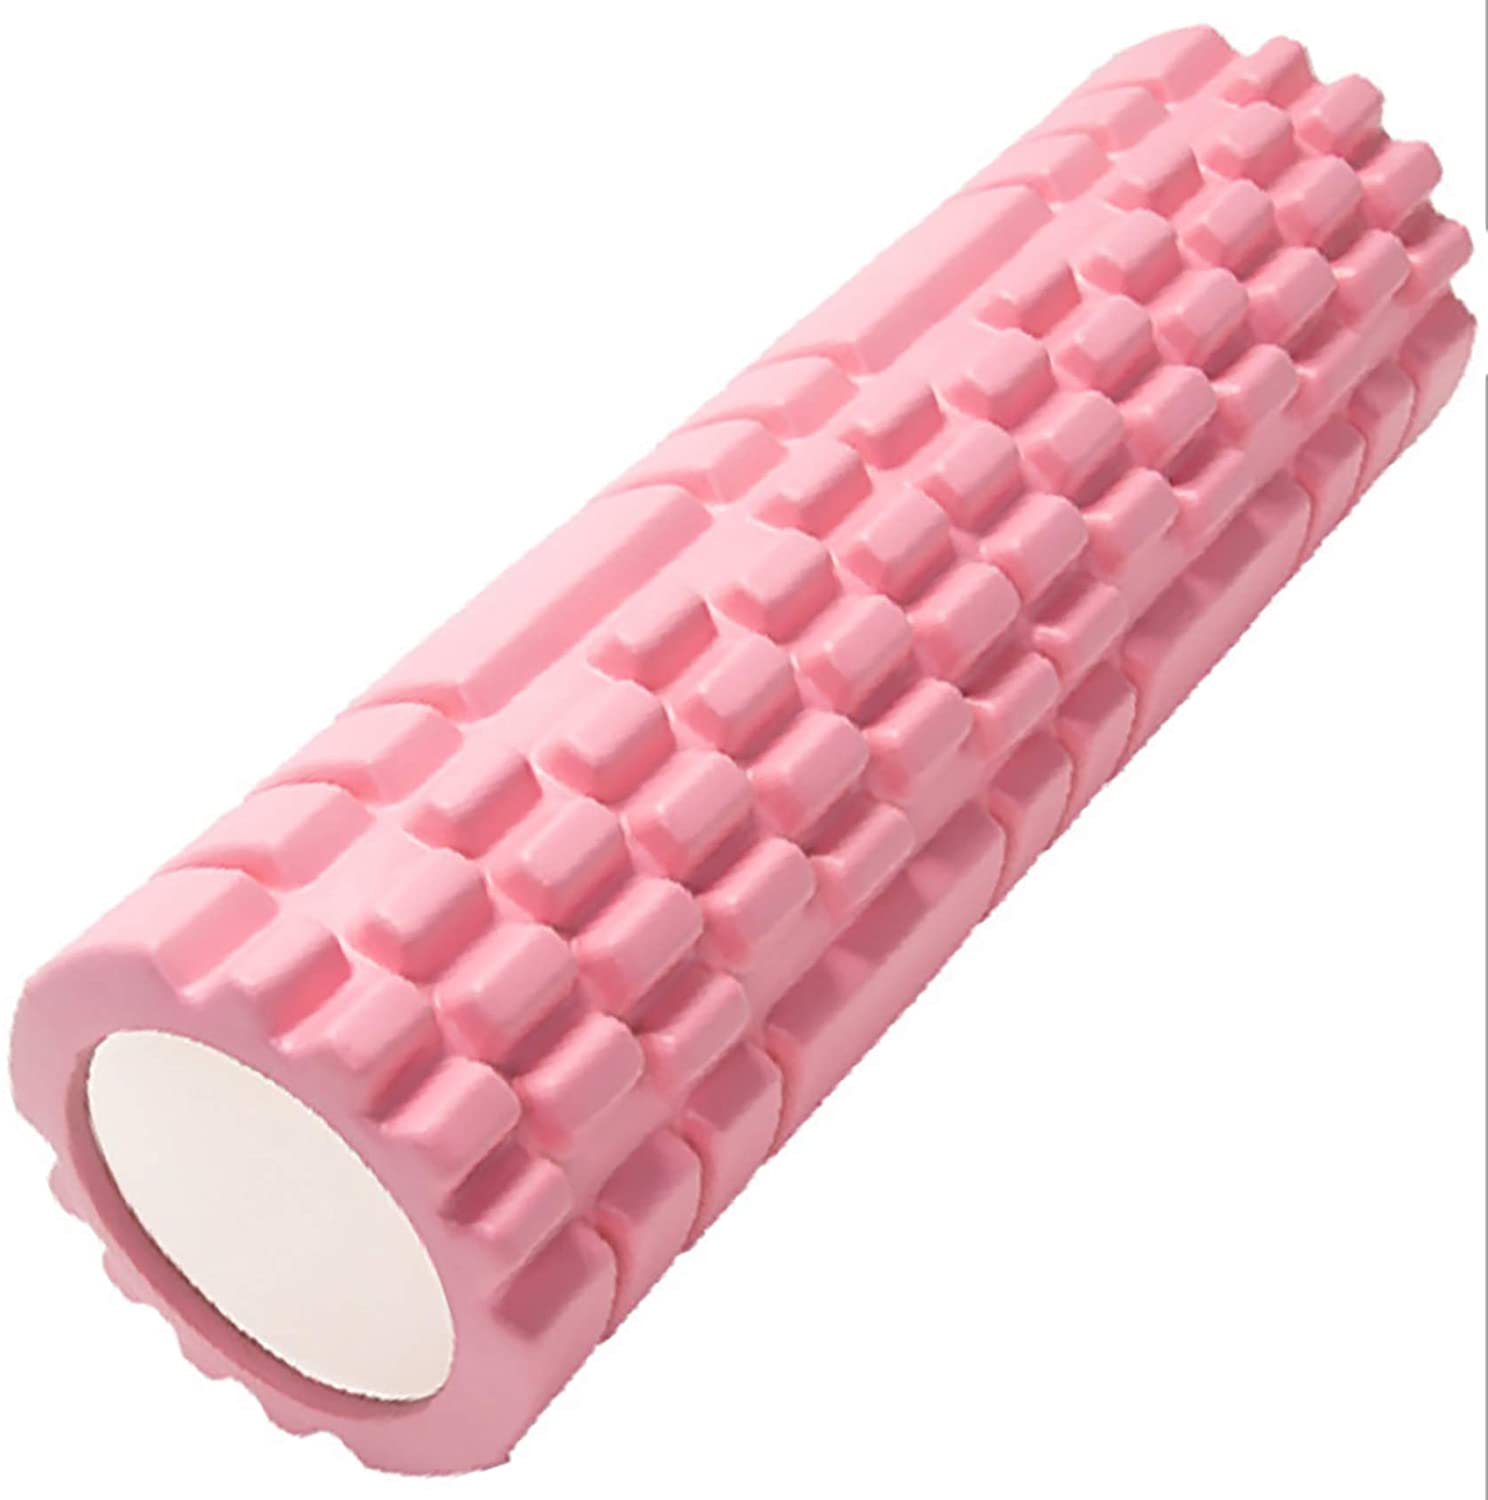 Foam Roller, multifunction pink foam roller for deep tissue muscle massage